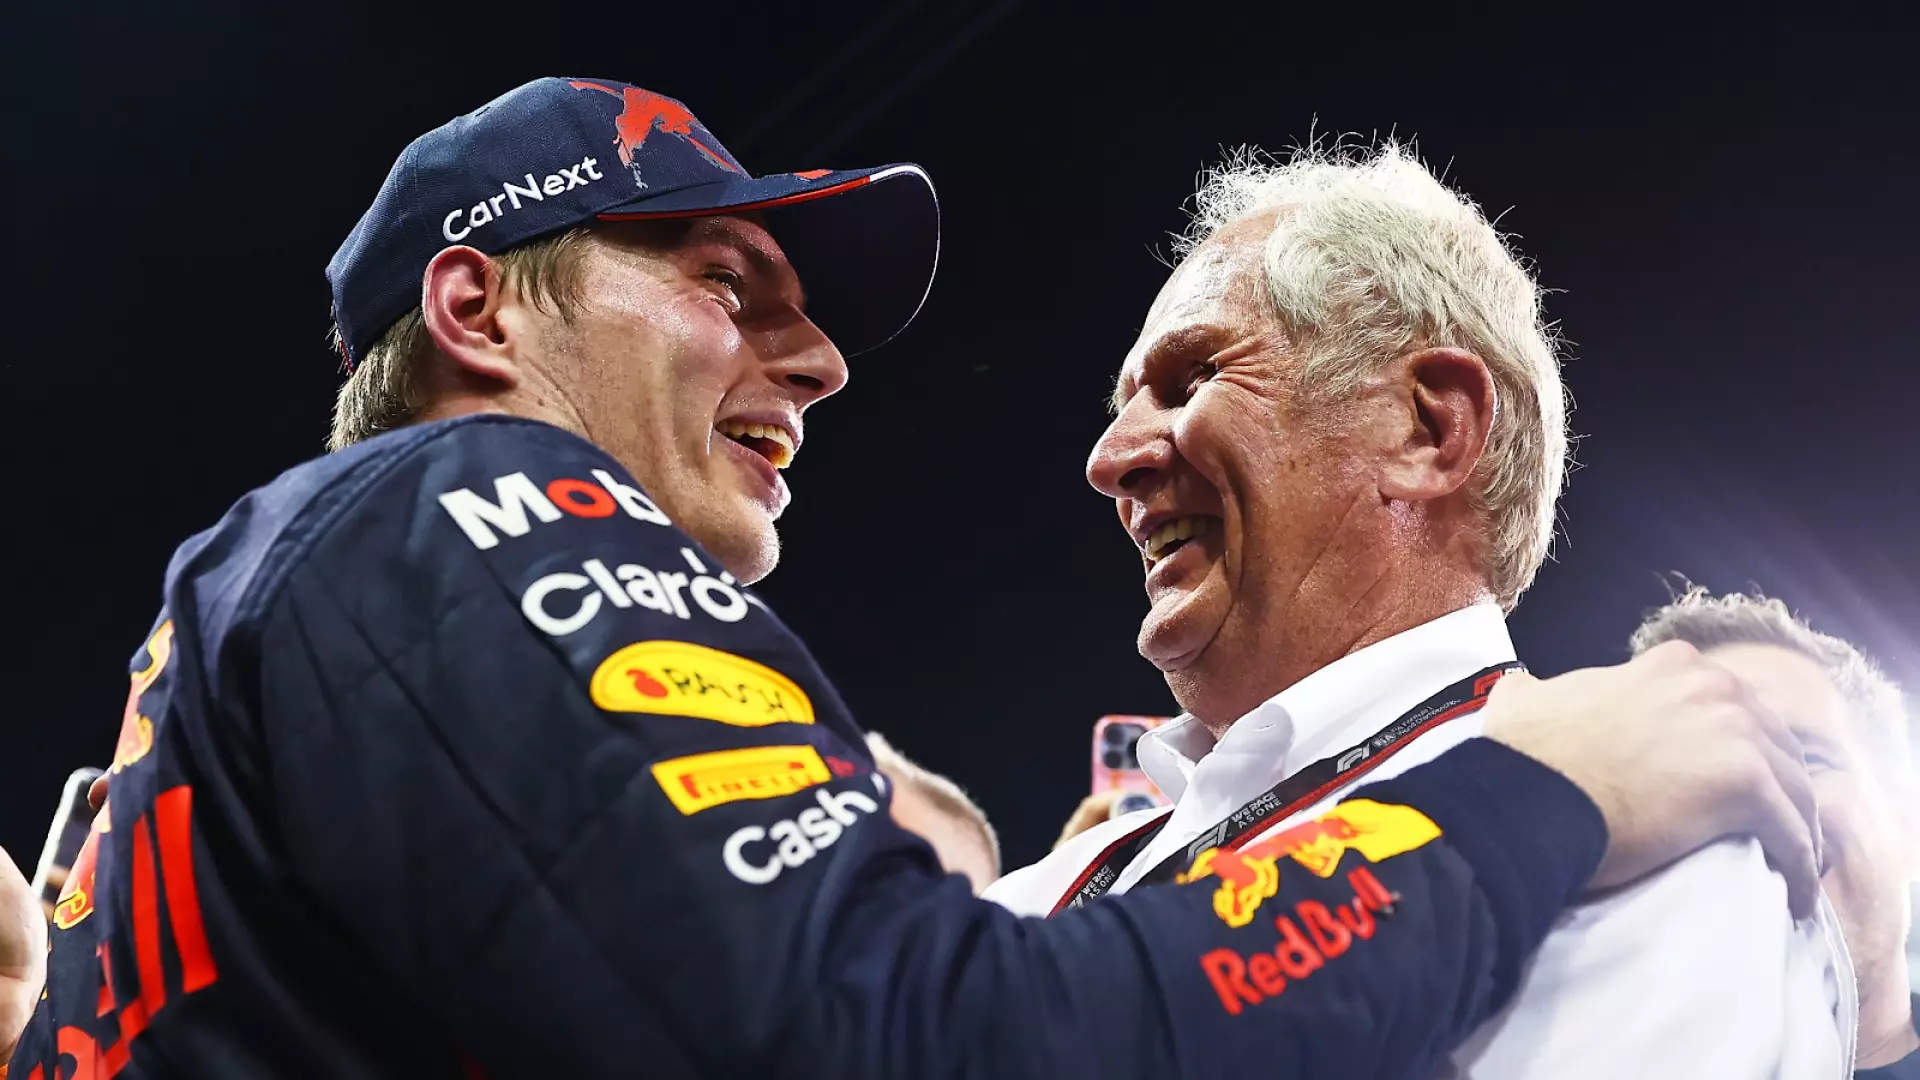 F1, Max Verstappen: messaggio speciale per gli 80 anni di Helmut Marko